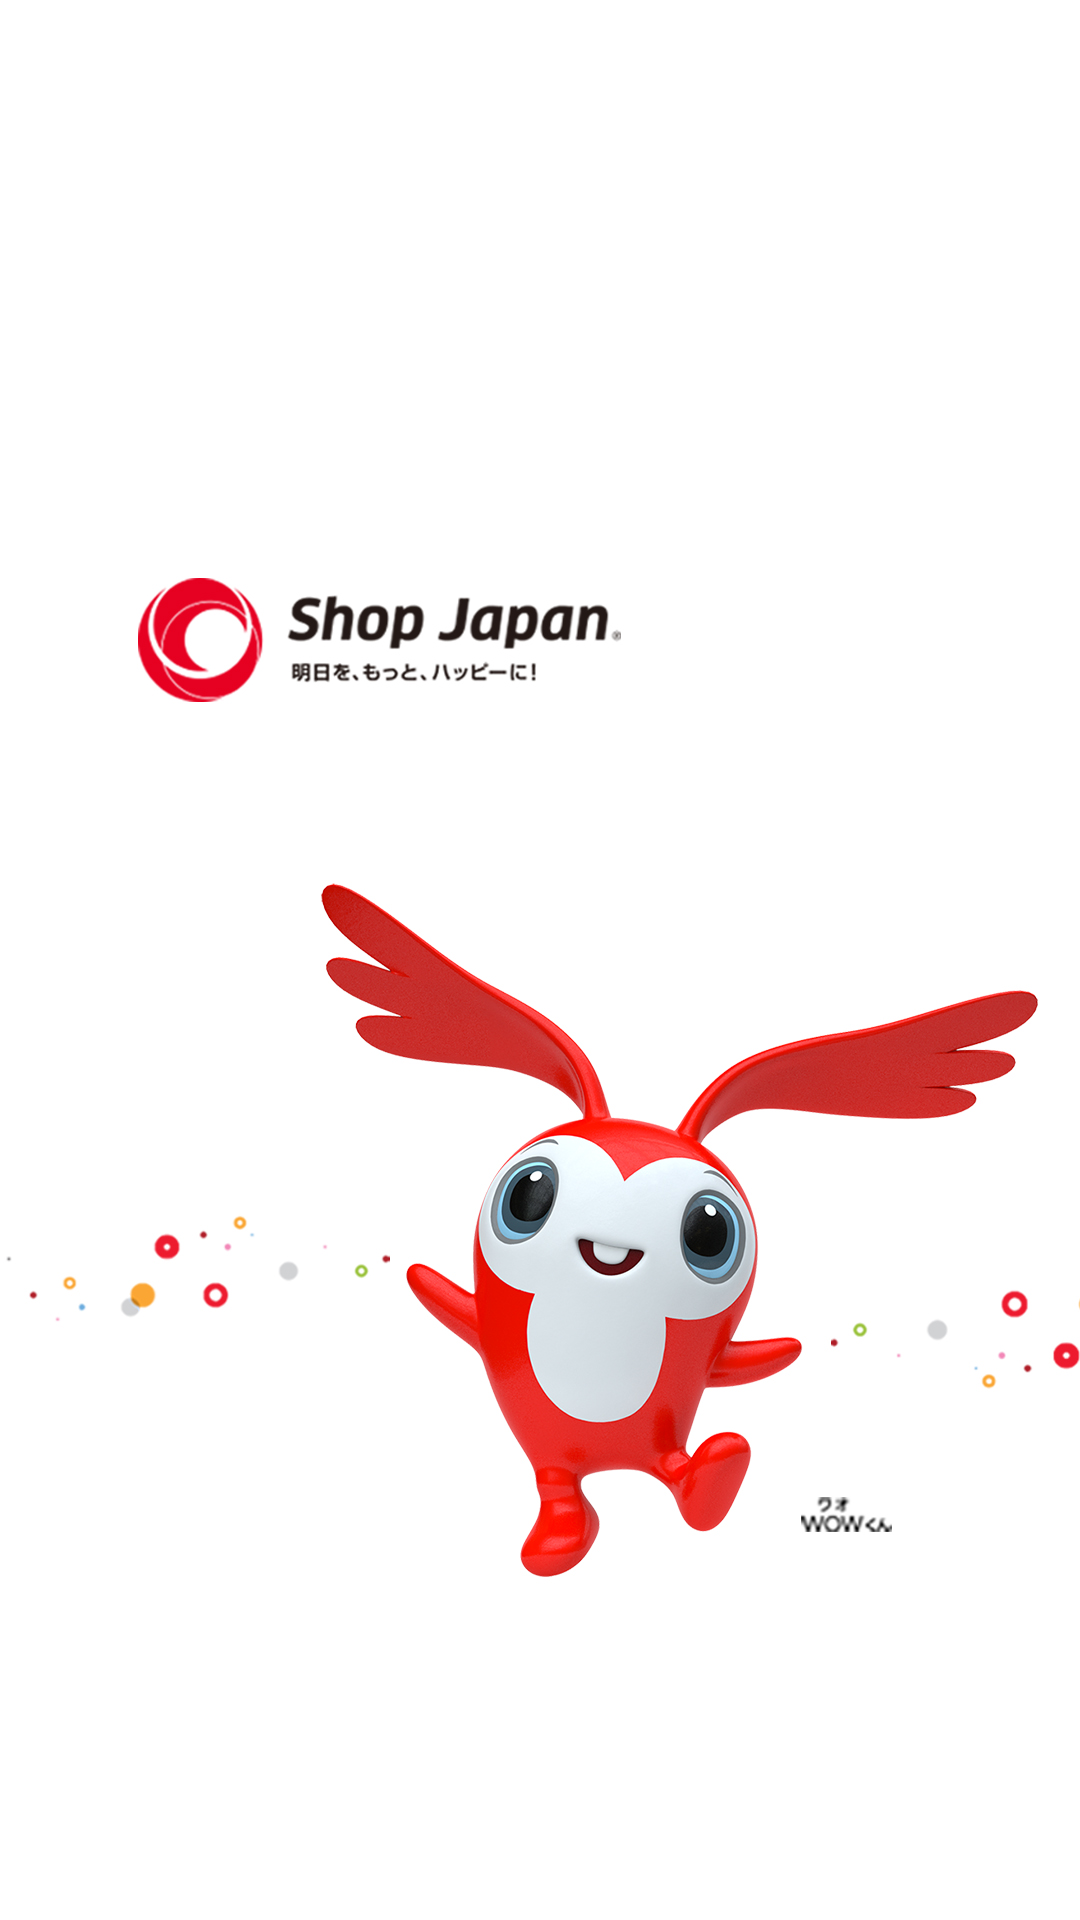 ショップジャパンのキャラクター 事業内容 ショップジャパンとは 株式会社オークローンマーケティング